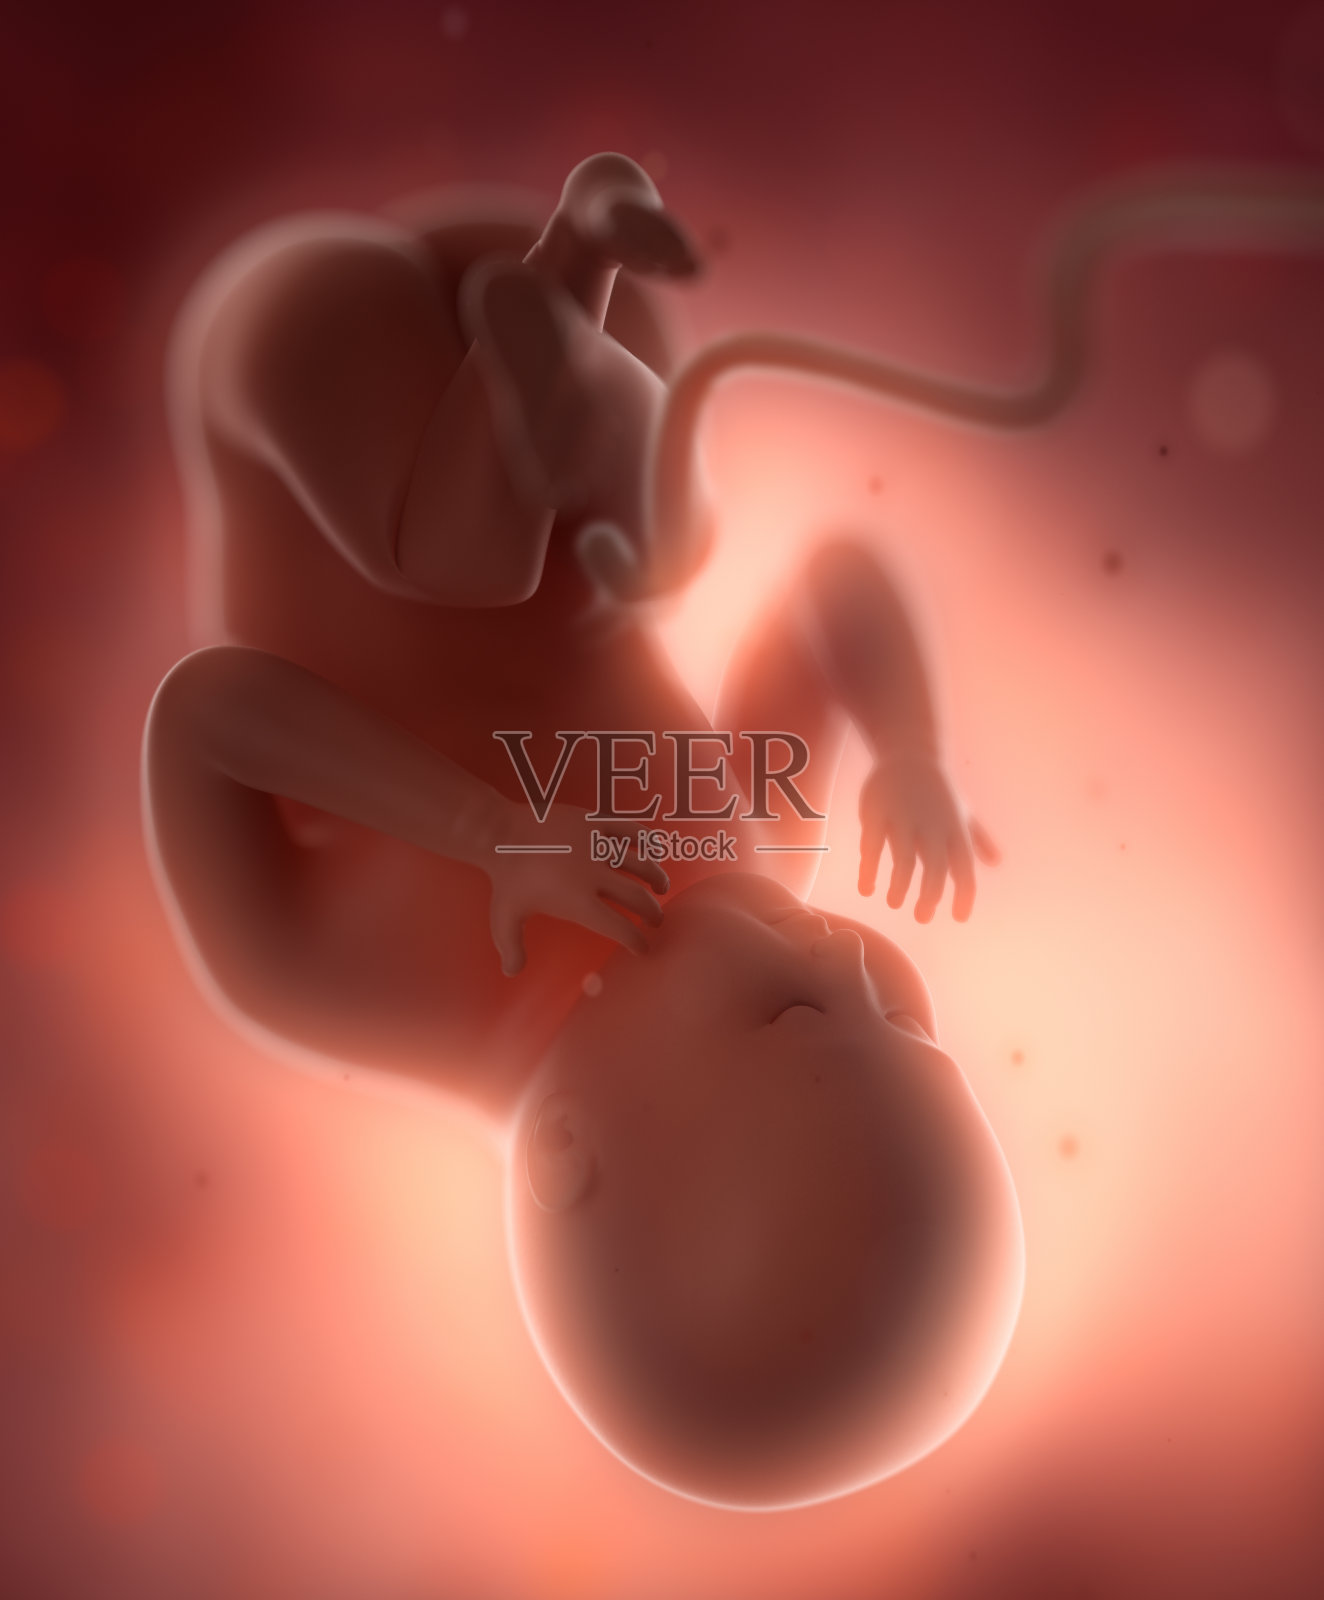 胎儿胎儿是孕妇肚子里的概念照片摄影图片